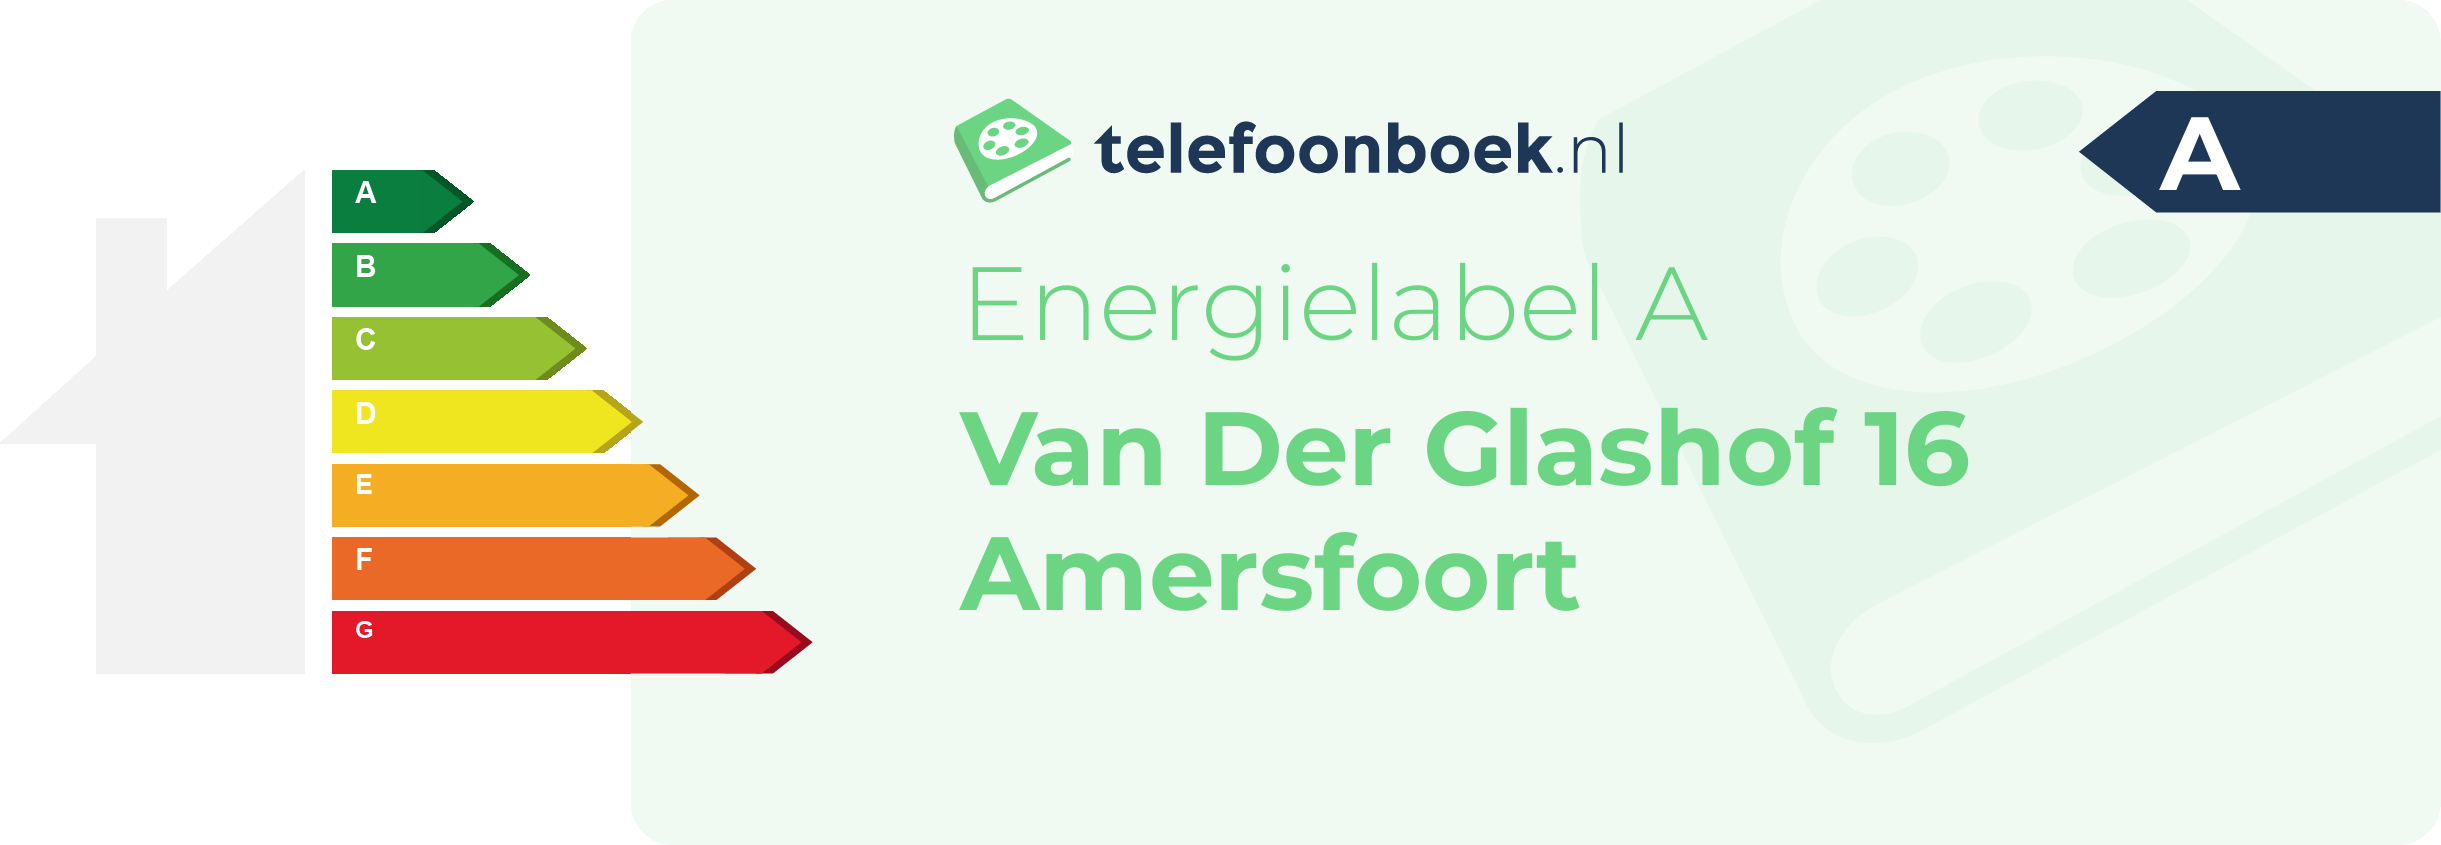 Energielabel Van Der Glashof 16 Amersfoort